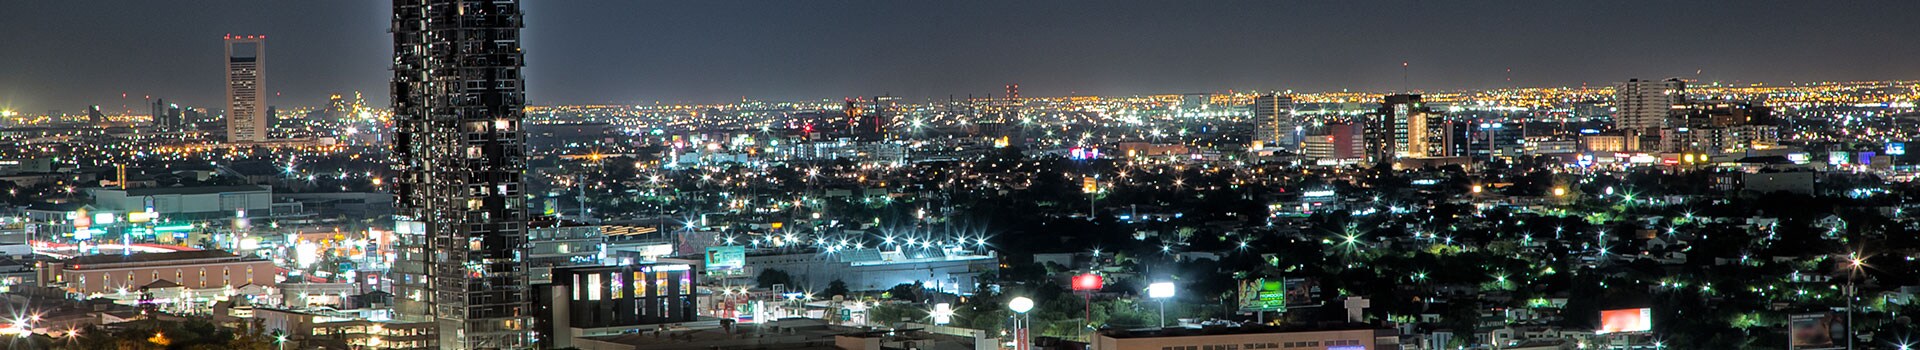 Città del Messico - Monterrey